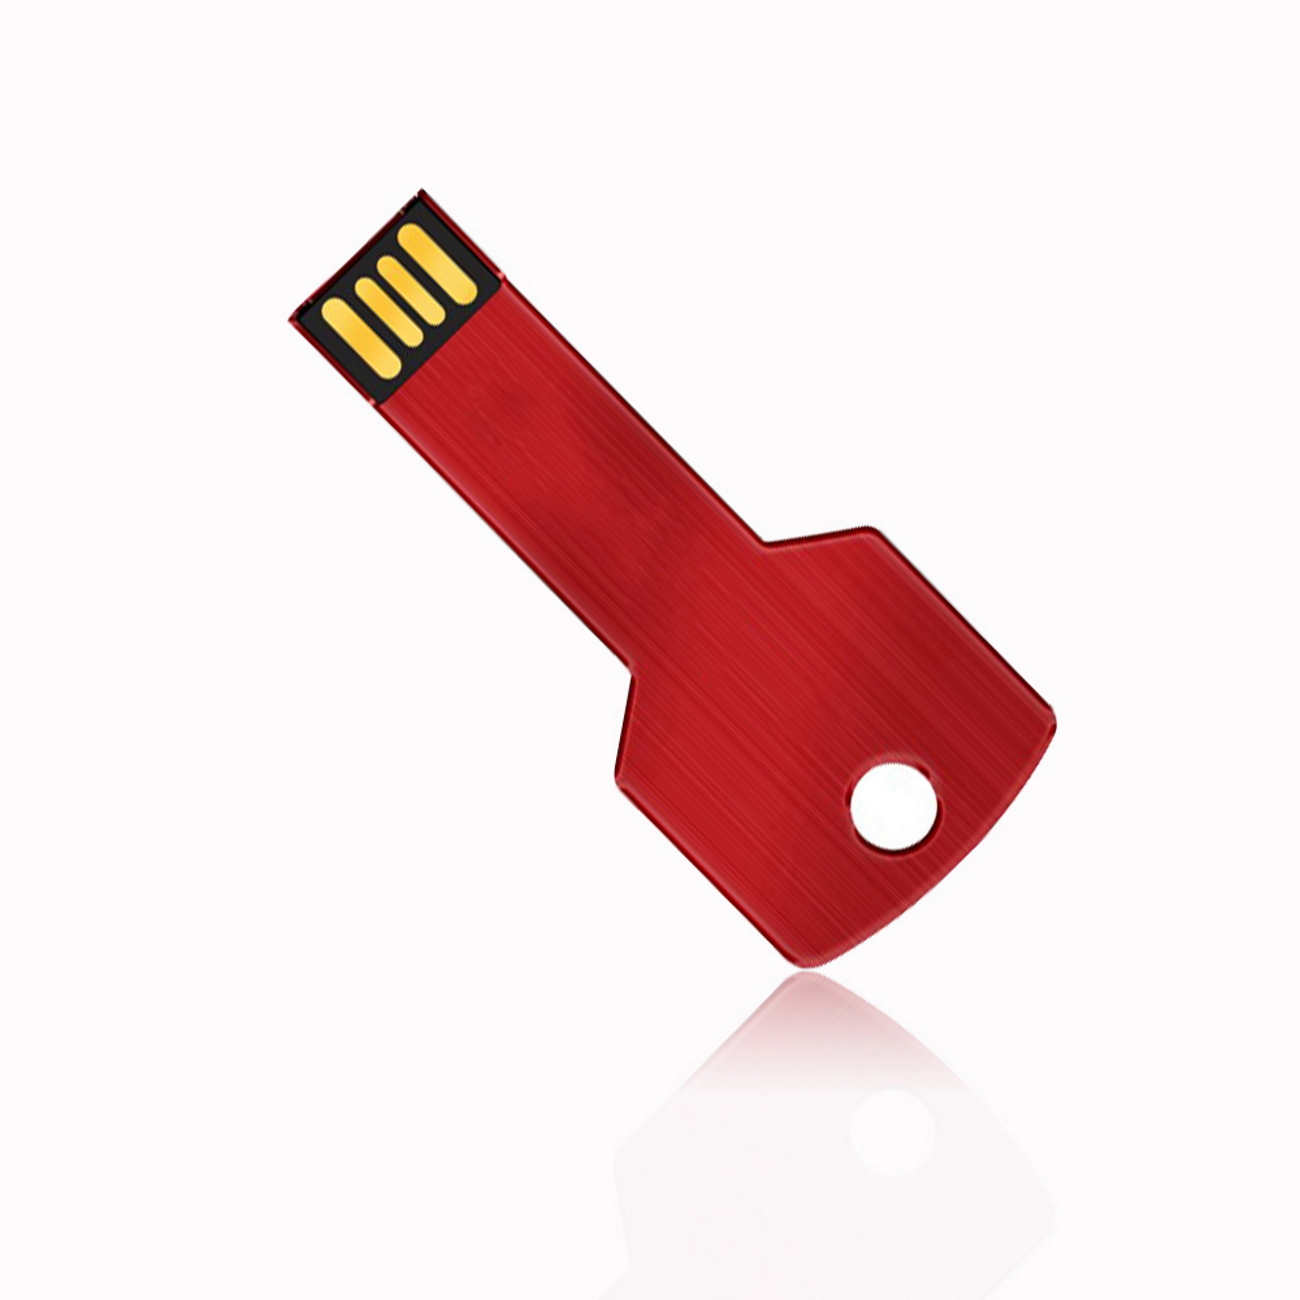 GERMANY Key (Rot, 16 Rot 16GB GB) USB USB-Stick